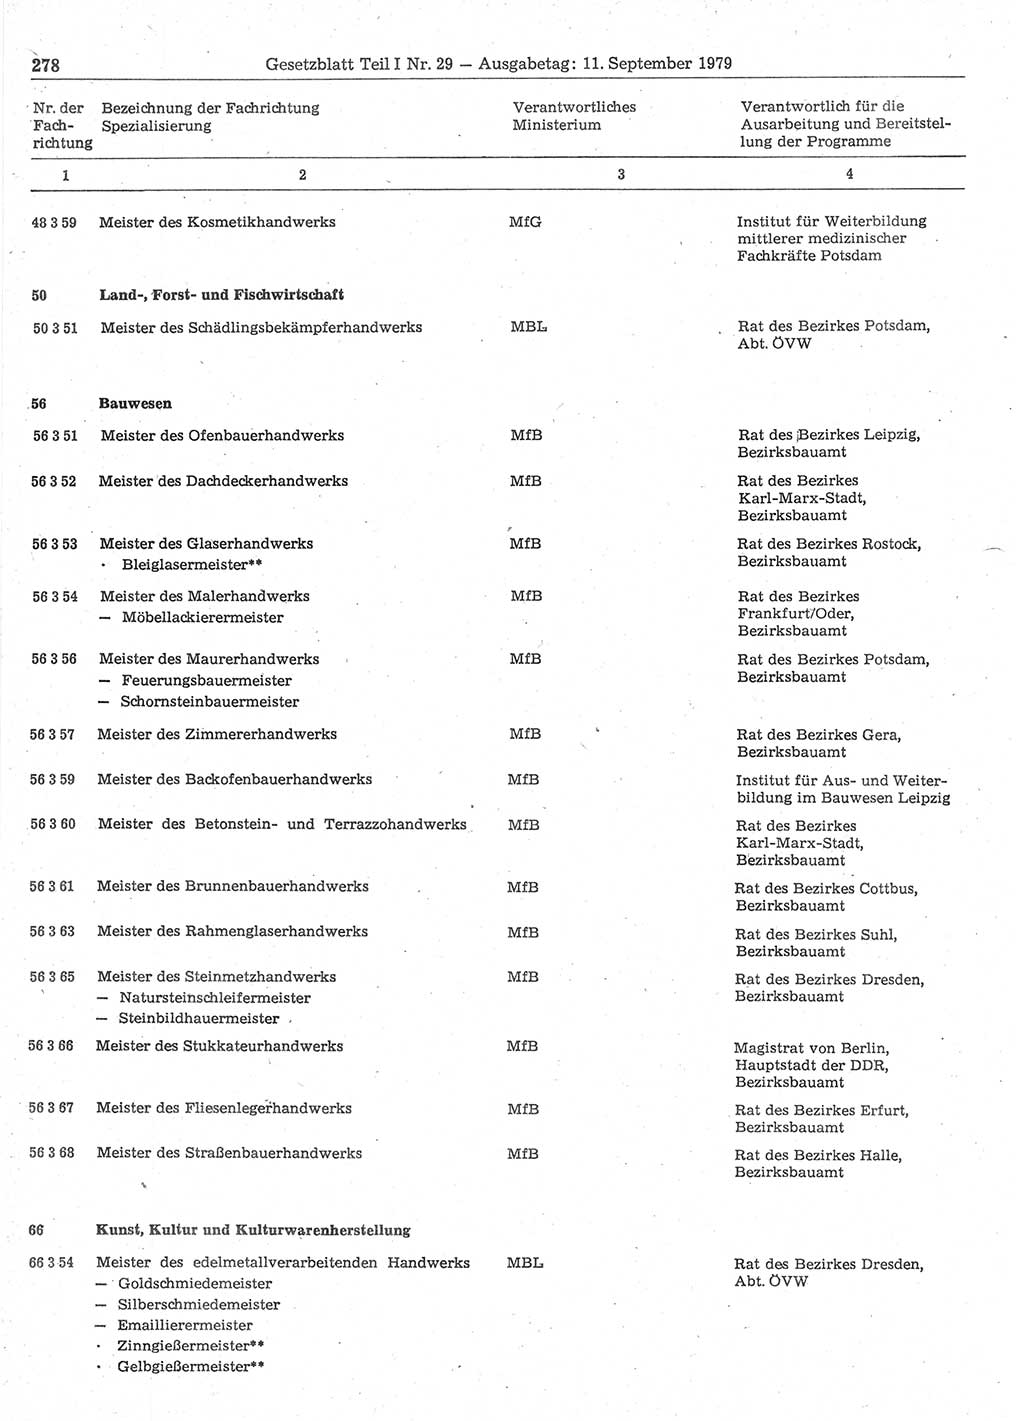 Gesetzblatt (GBl.) der Deutschen Demokratischen Republik (DDR) Teil Ⅰ 1979, Seite 278 (GBl. DDR Ⅰ 1979, S. 278)